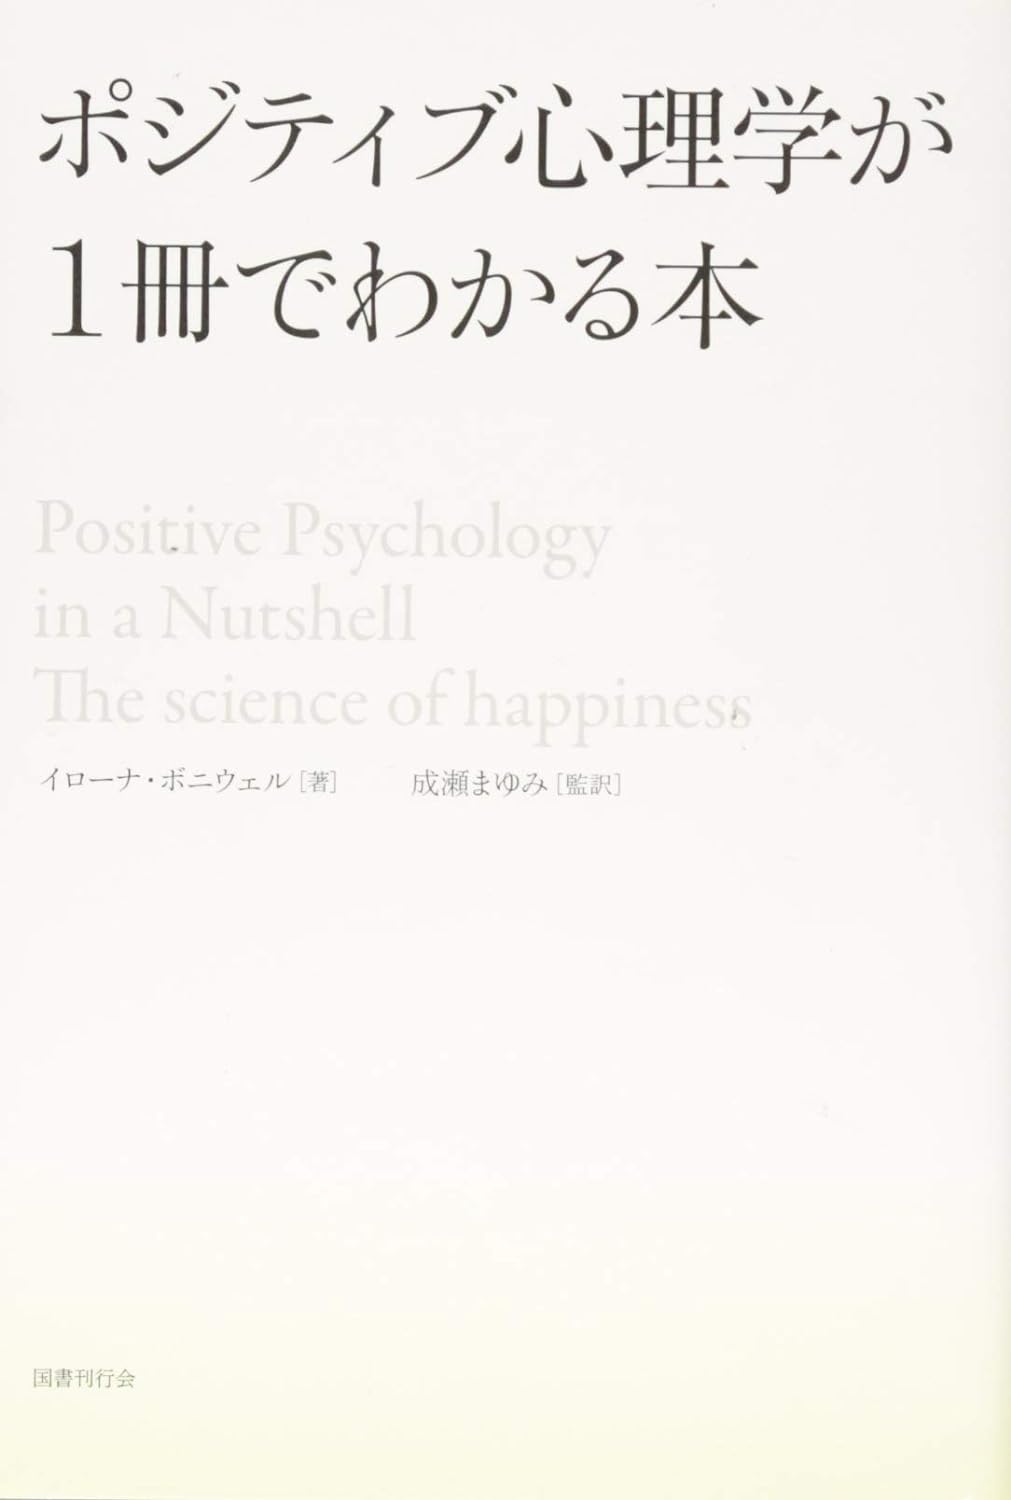 ポジティブ心理学が一冊でわかる本